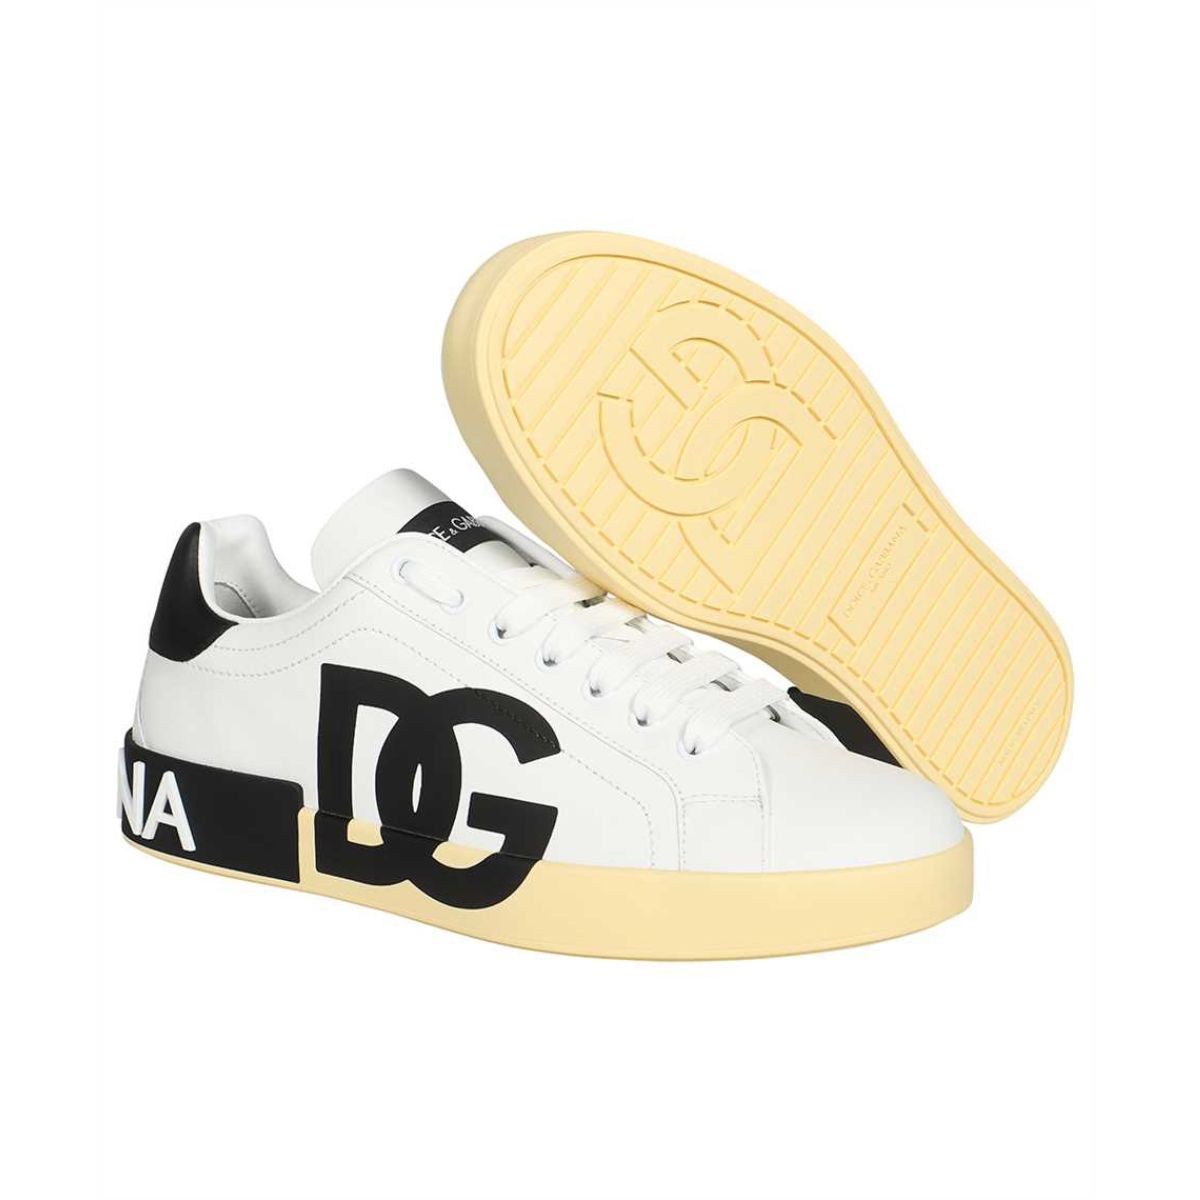 Sneakers Dolce & Gabbana CS1772 AC330